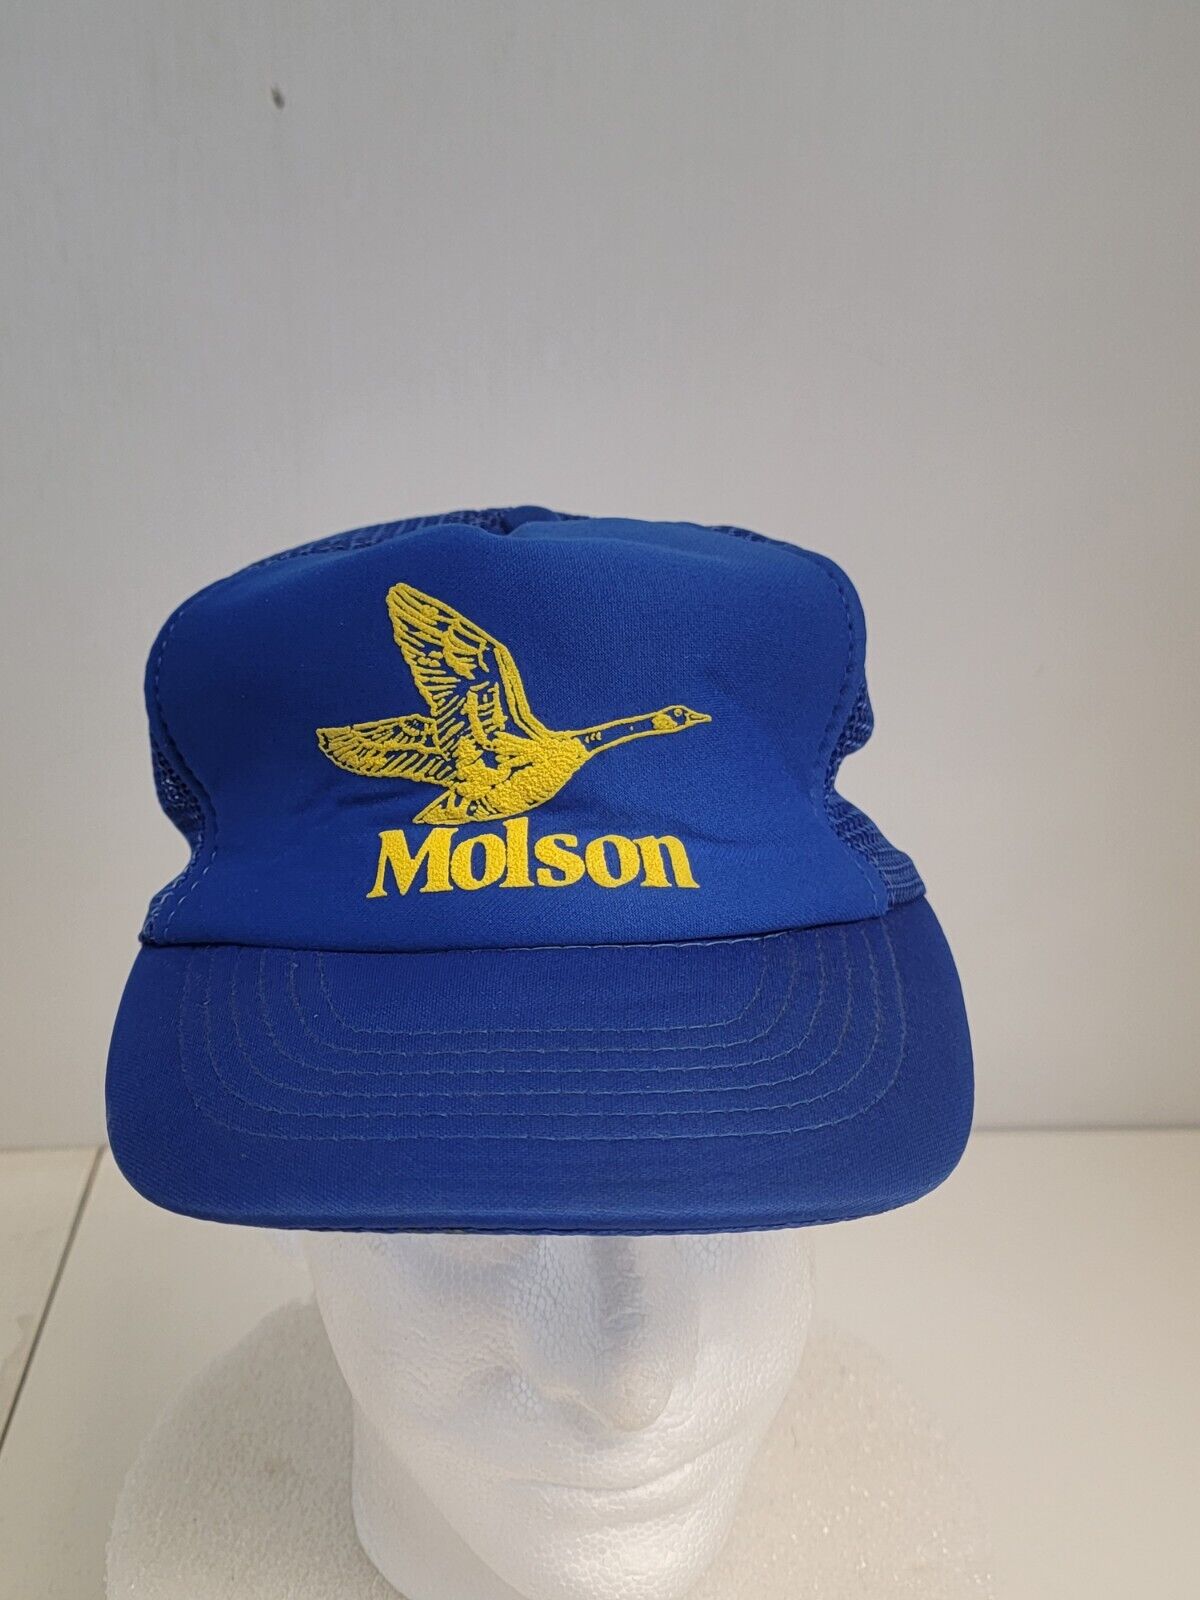 Vtg Molson Cap Canadian Beer Goose Logo Mesh Snap Back Trucker Baseball Dad Hat